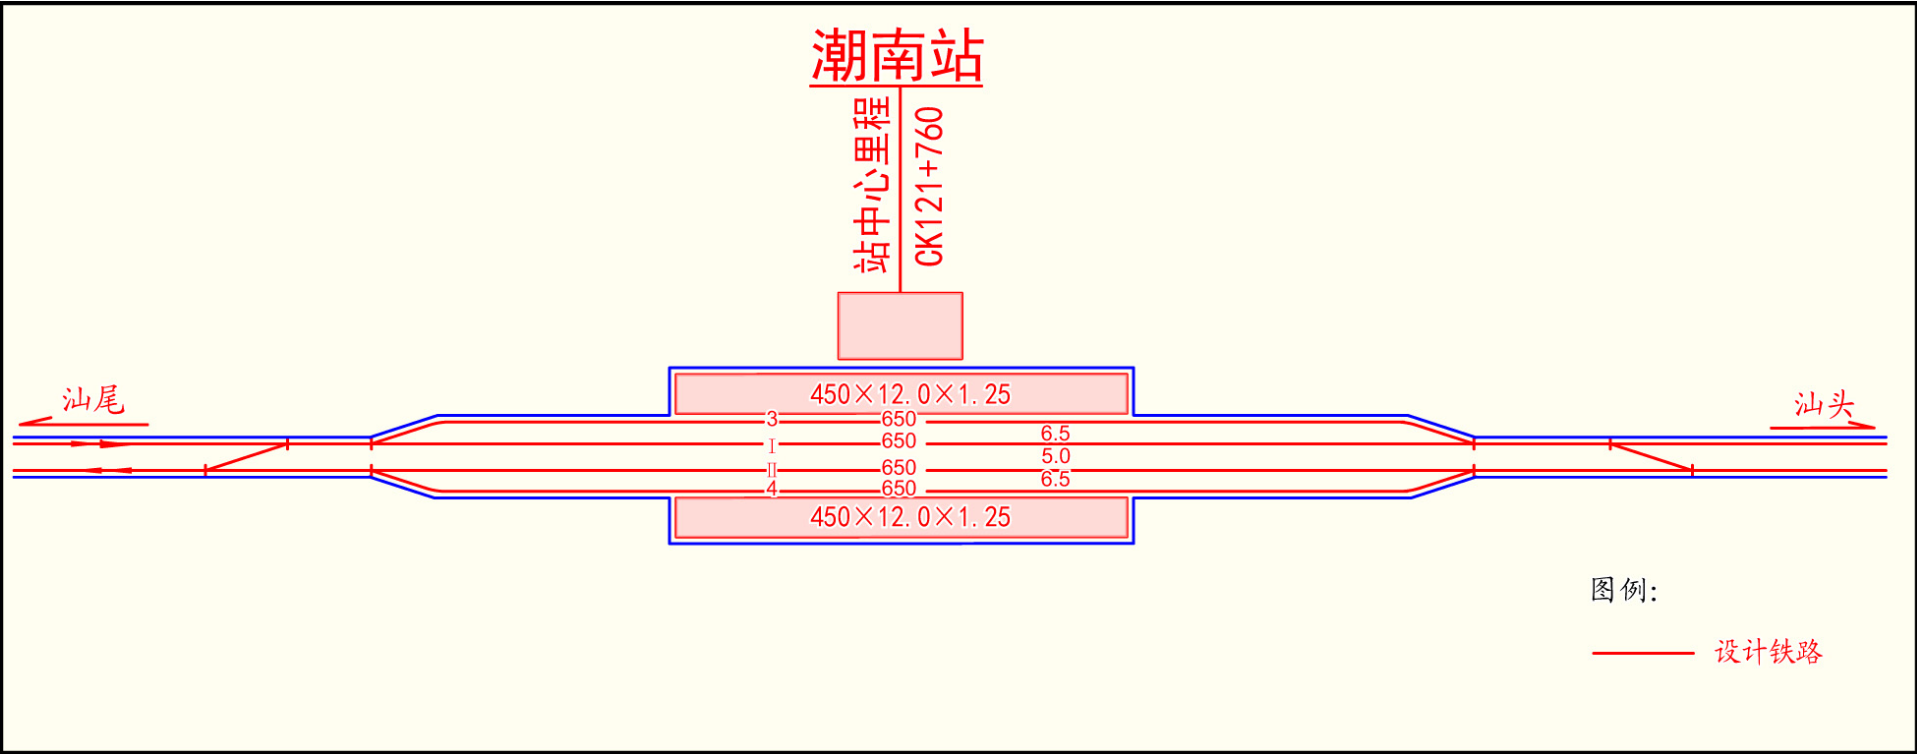 潮南站站檯布置平面圖